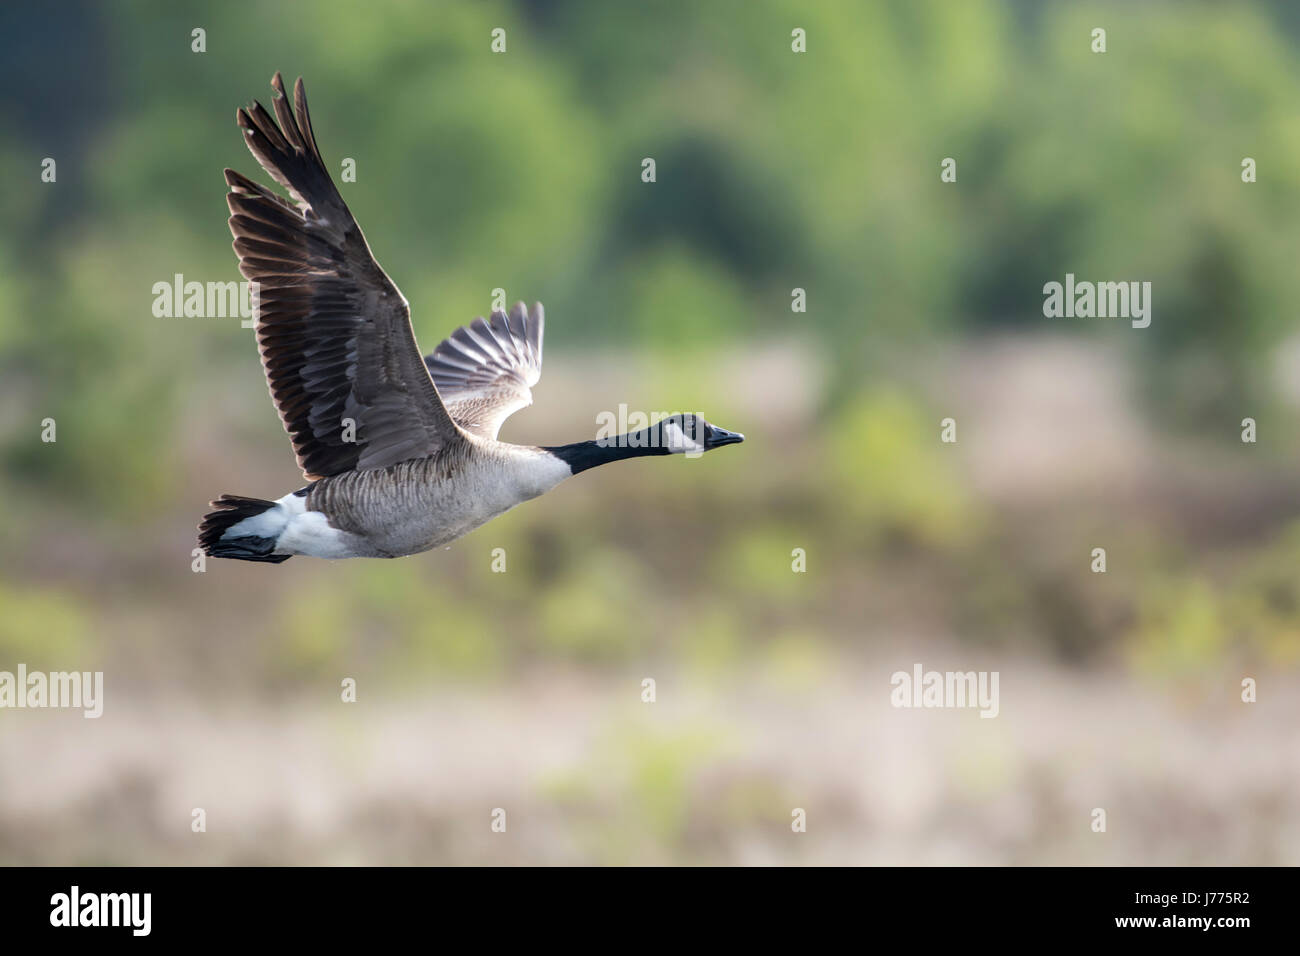 Canada goose (Branta canadensis) in flight. Stock Photo